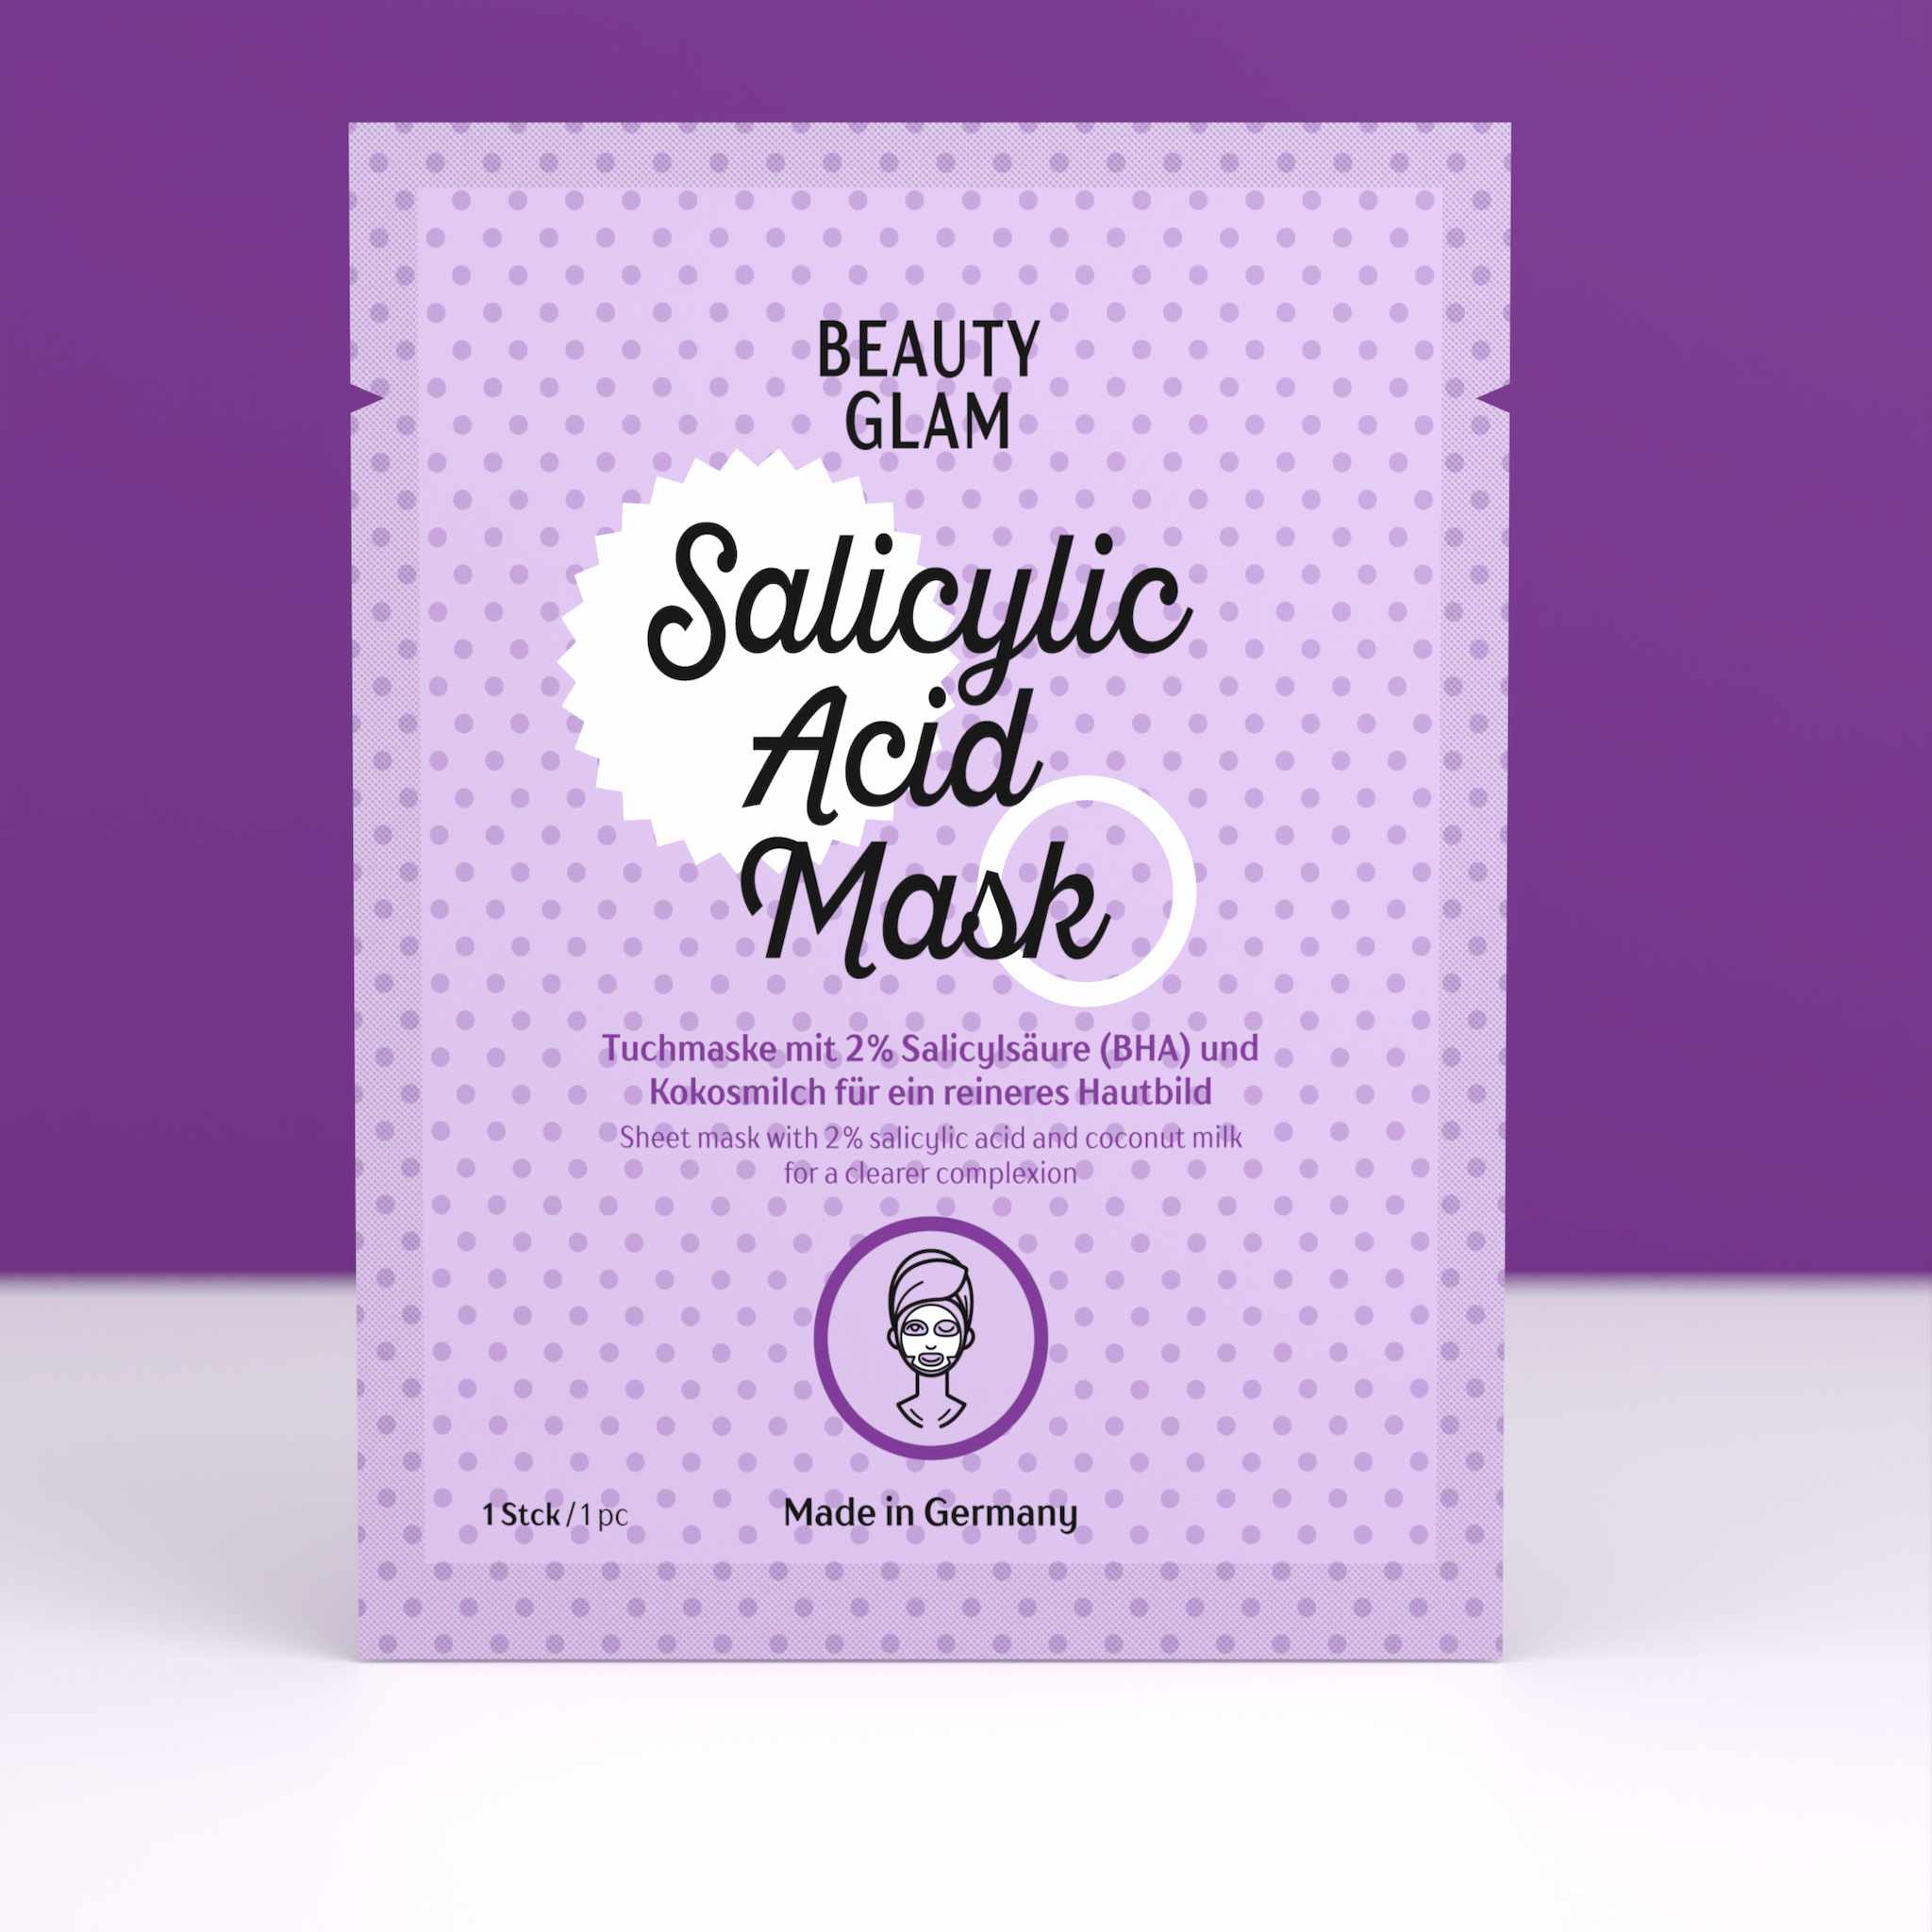 Beauty Glam Salicylic Acid Mask 5er Set